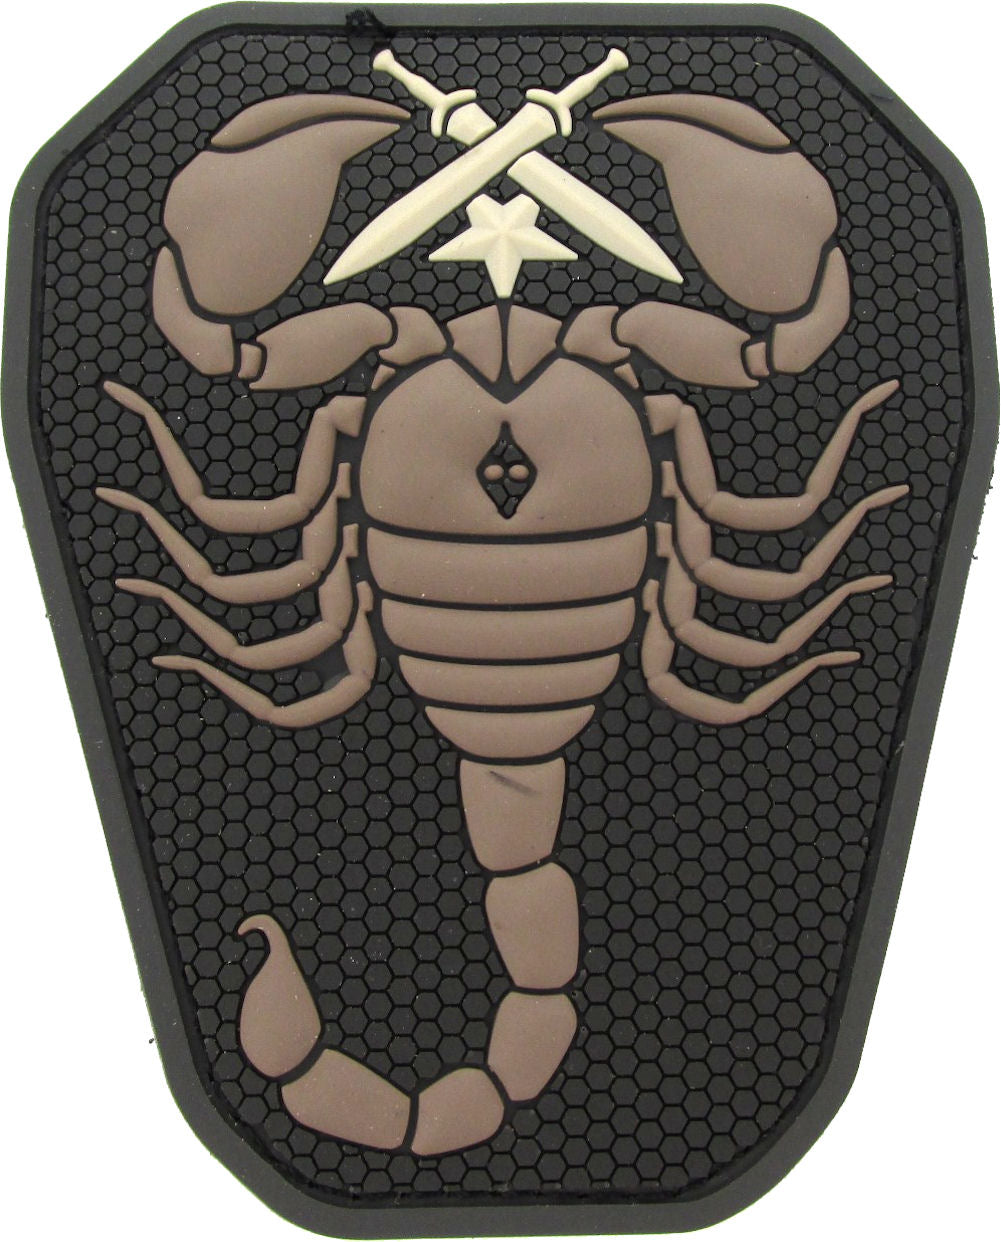 Scorpion Unit Morale Patch PVC - Mil-Spec Monkey